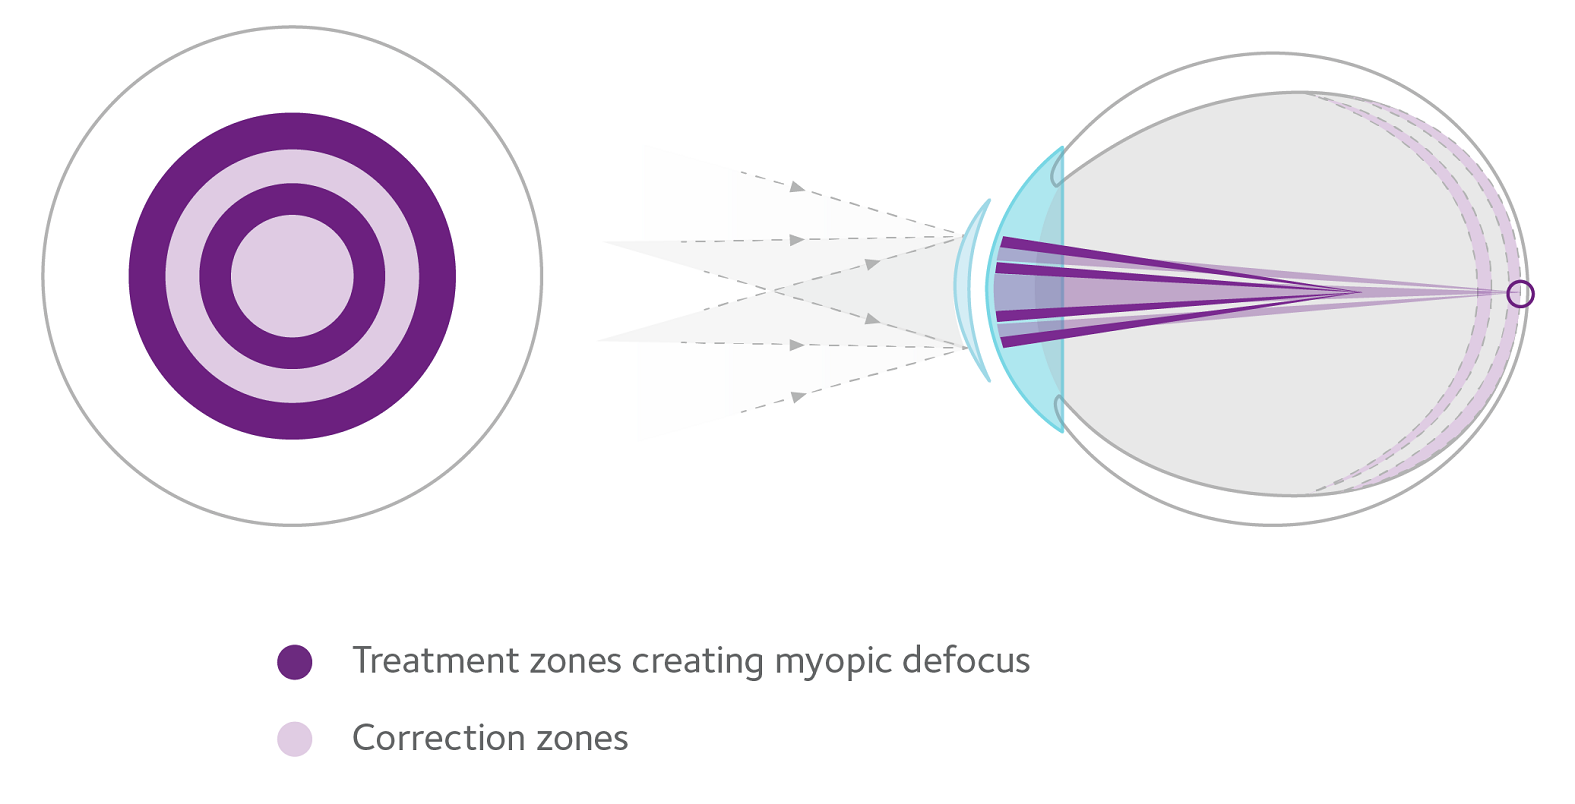 Treatment zones creating myopic defocus and correction zones